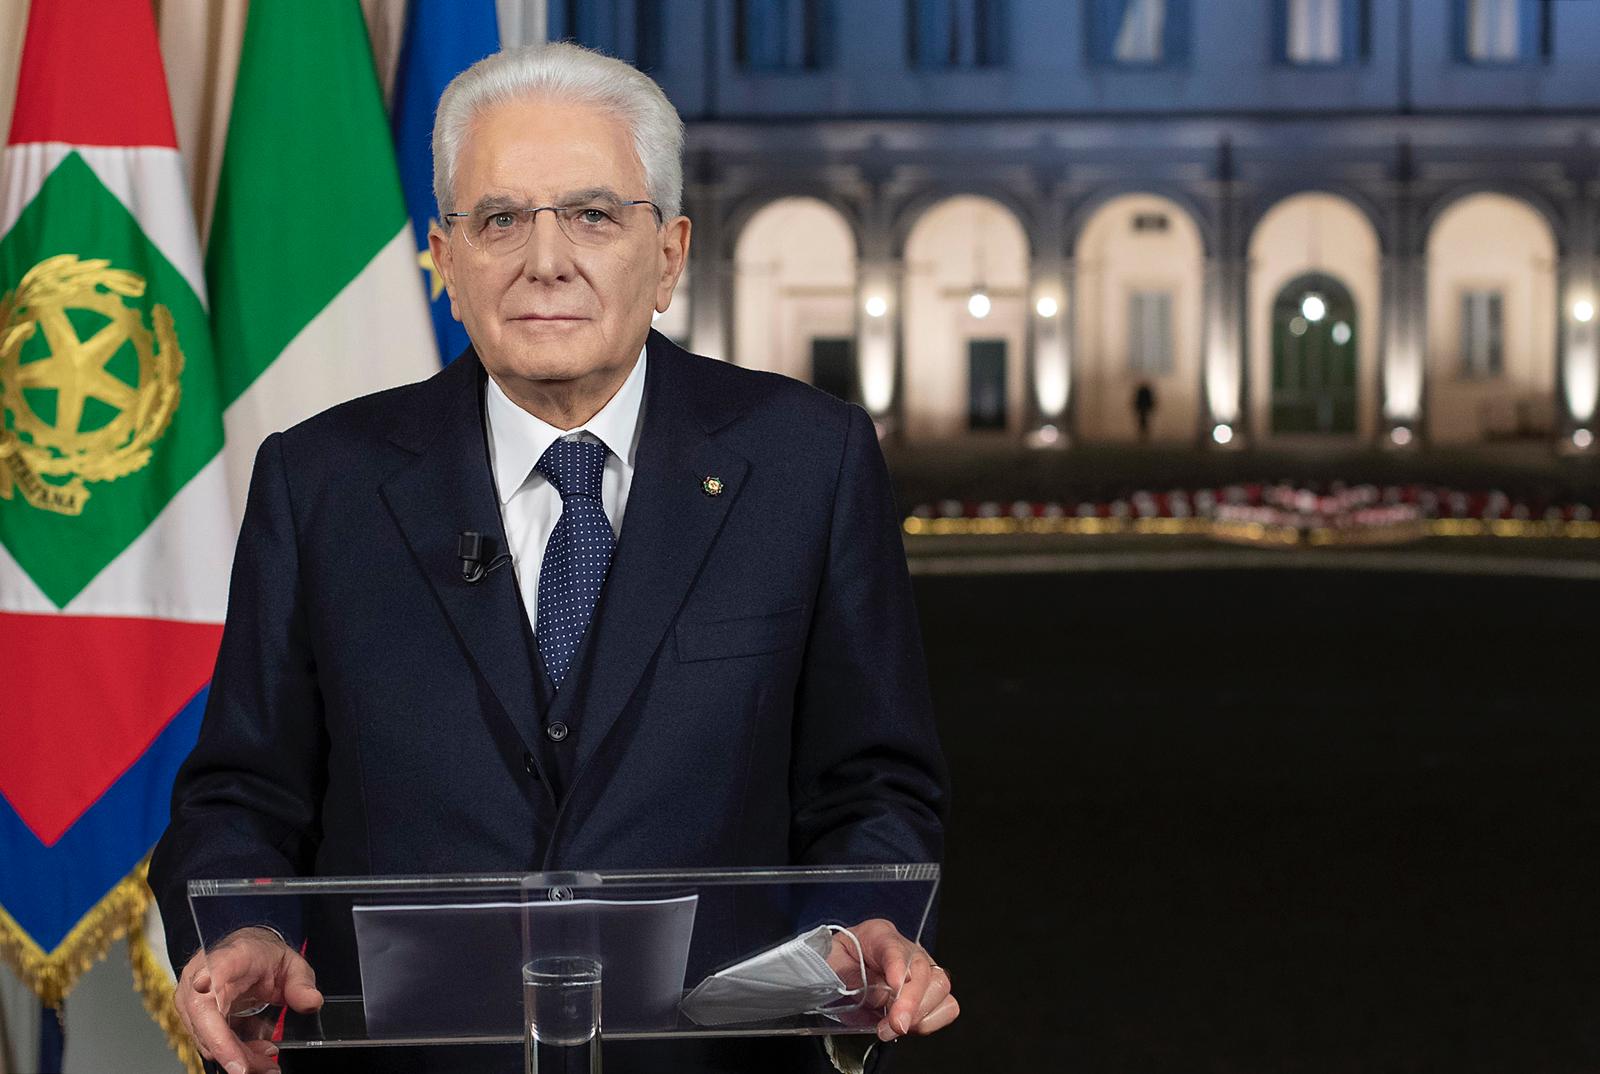 Il Presidente della Repubblica Mattarella applaude Gorizia nel suo discorso di fine anno